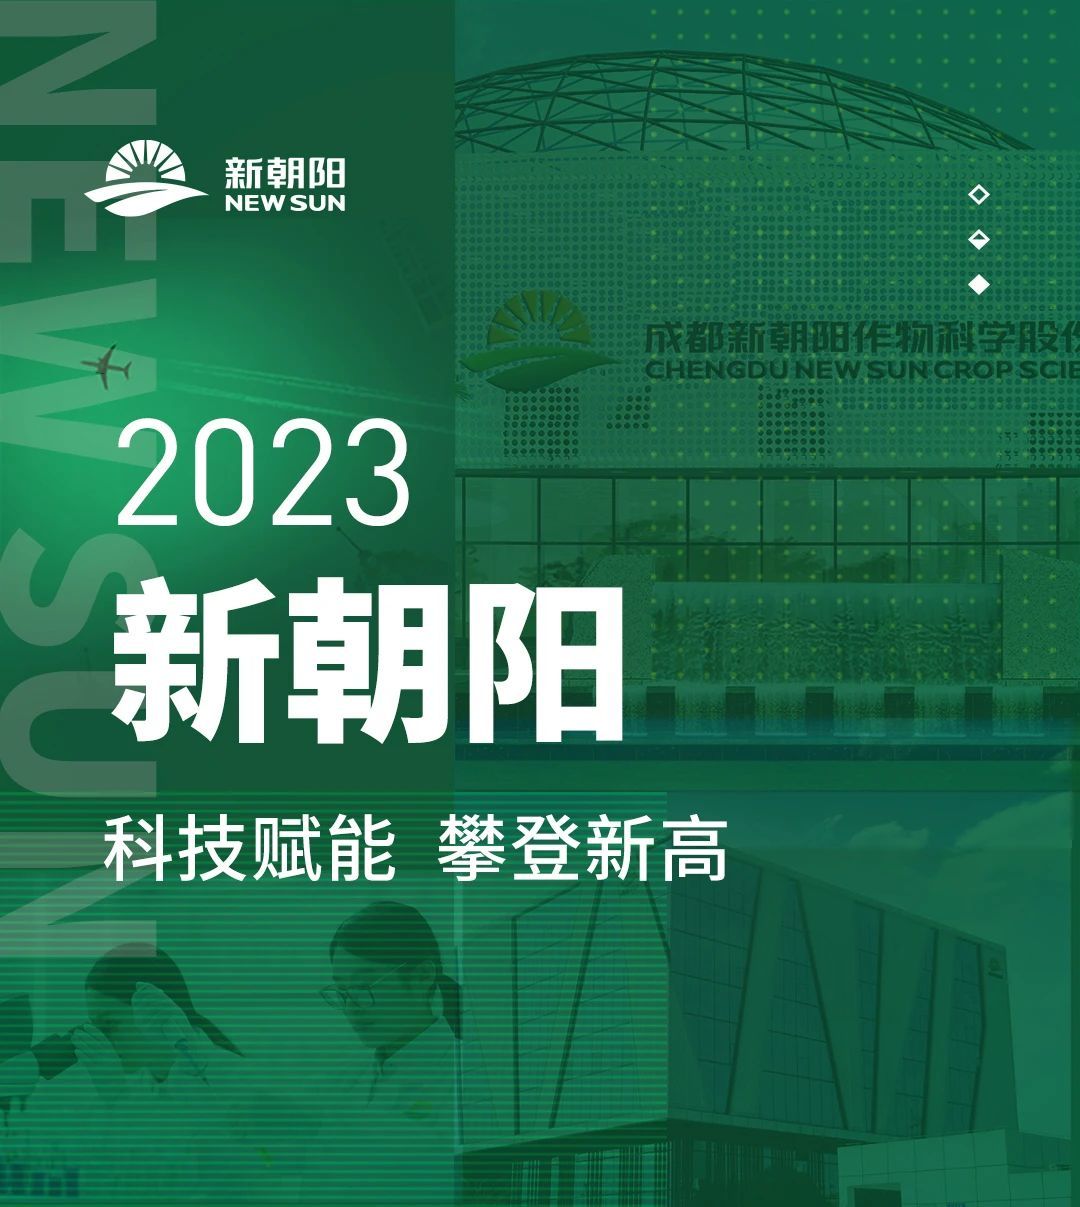 2023新朝阳 | 科技赋能 攀登新高